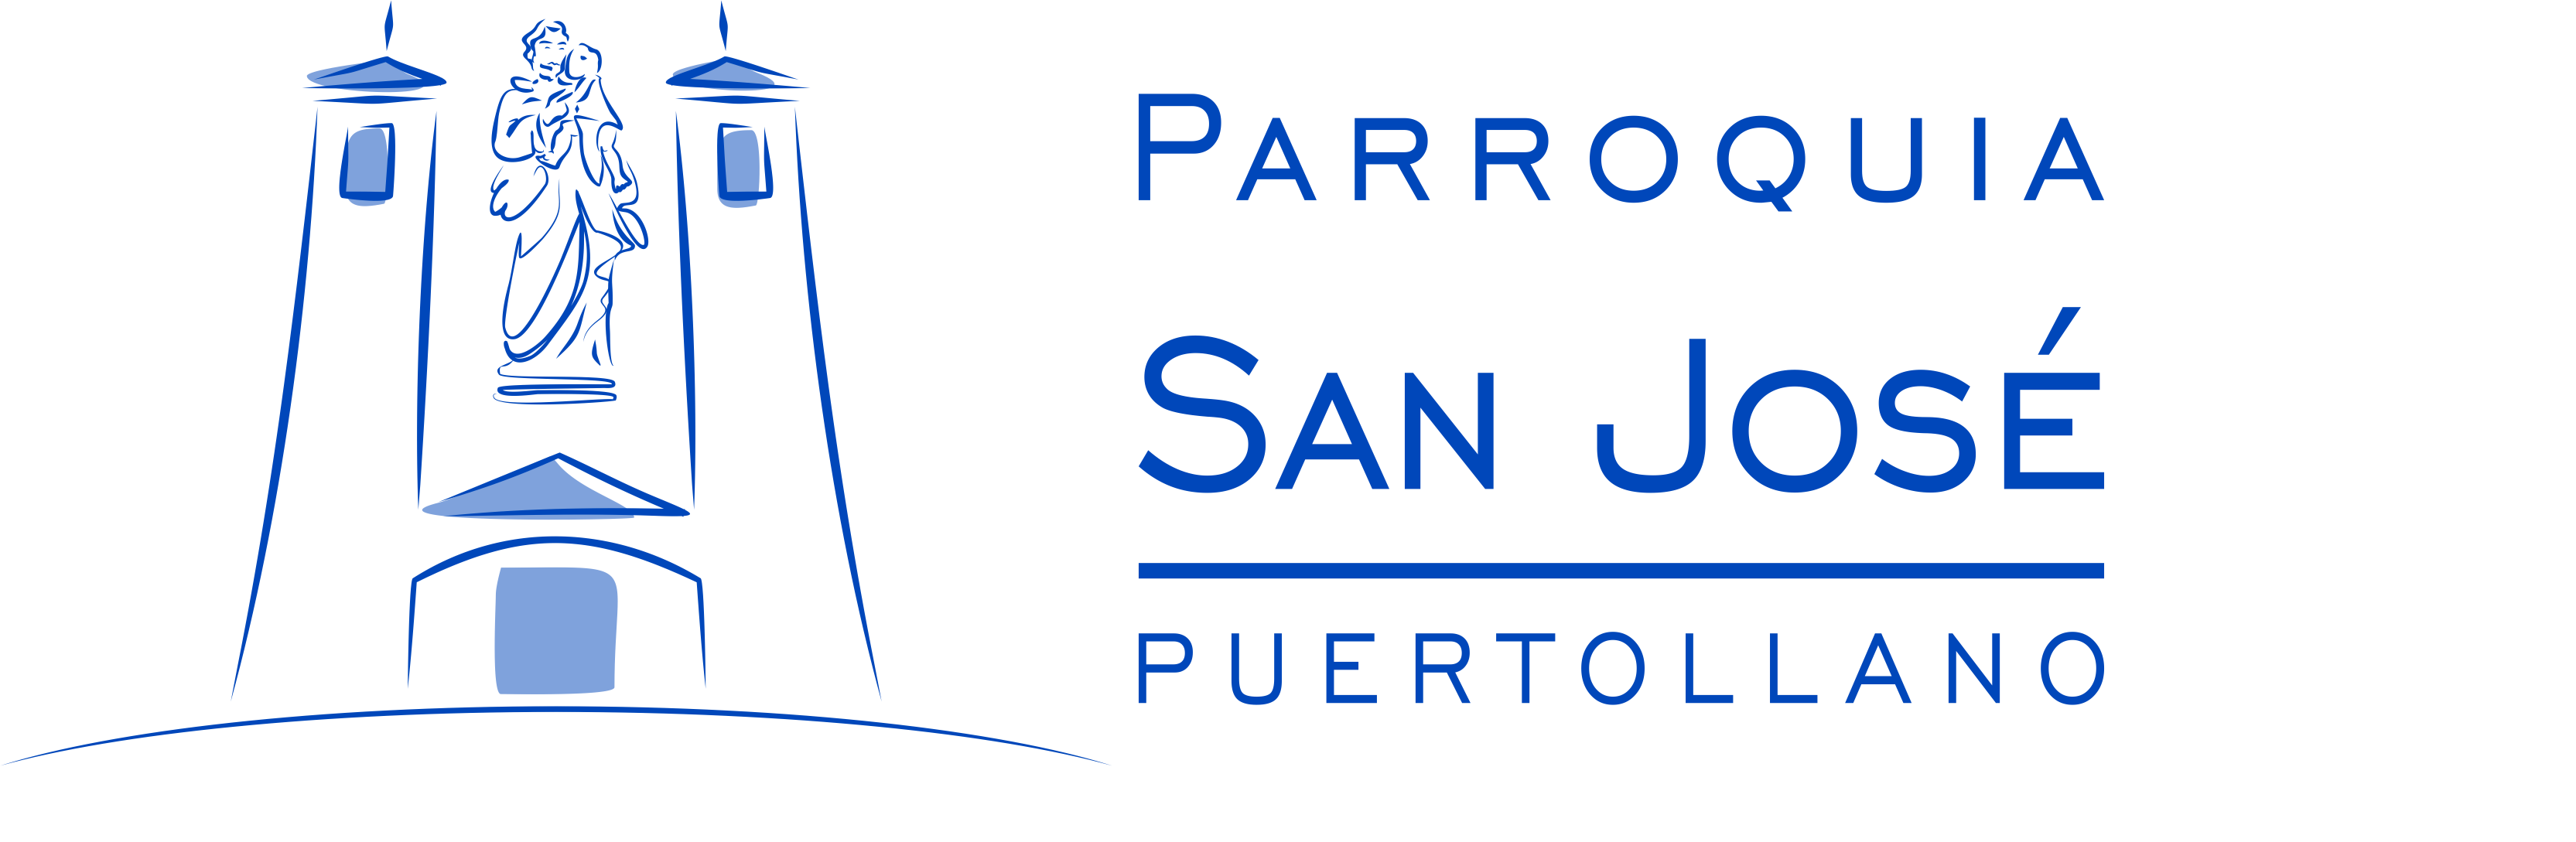 Parroquia San José - Puertollano